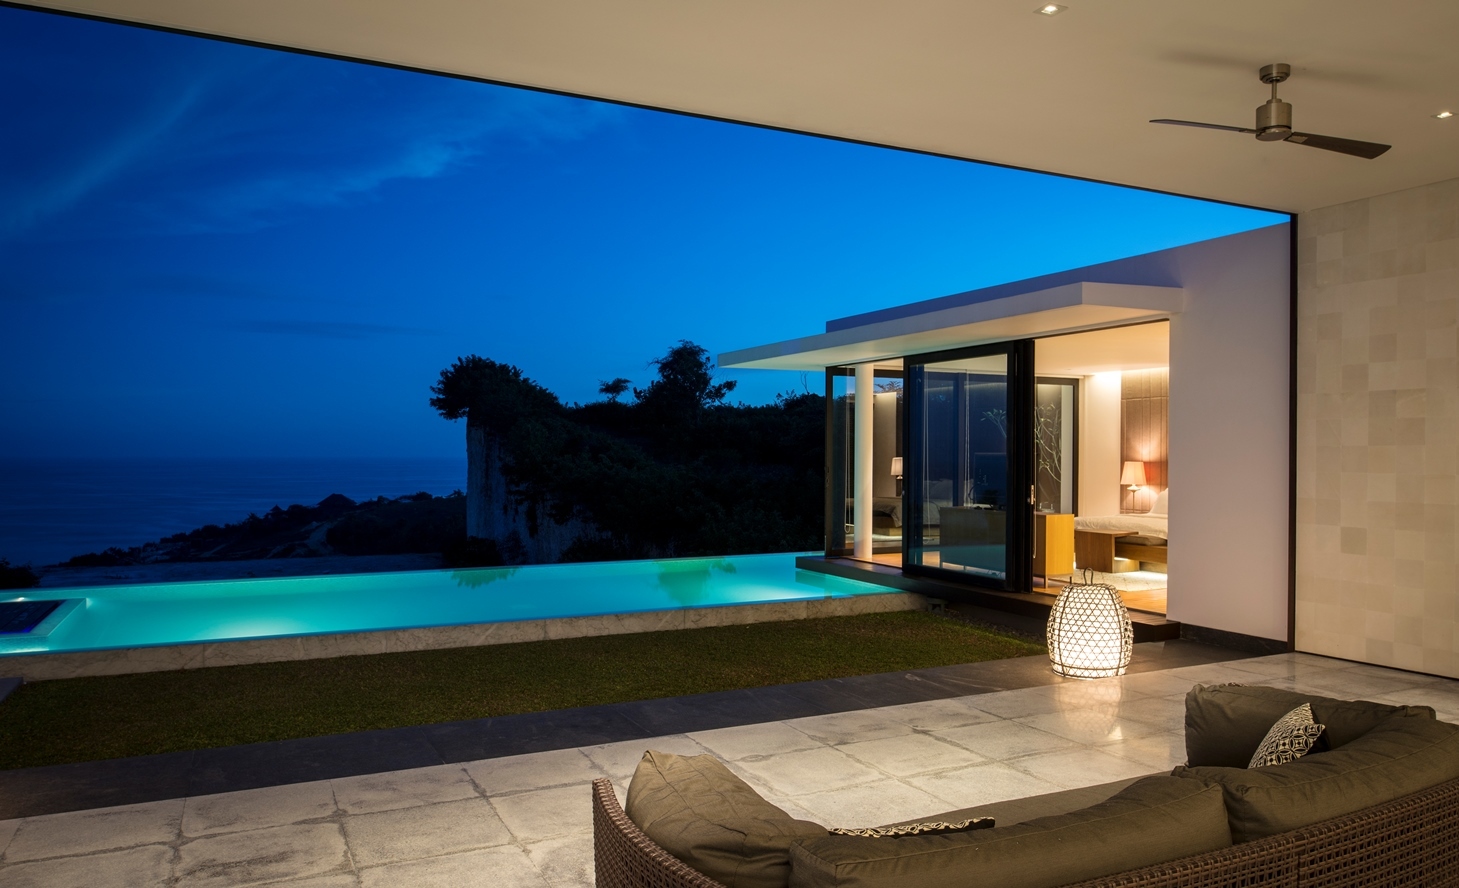 Modern Resort Villa With Balinese Theme | iDesignArch | Interior Design ...
